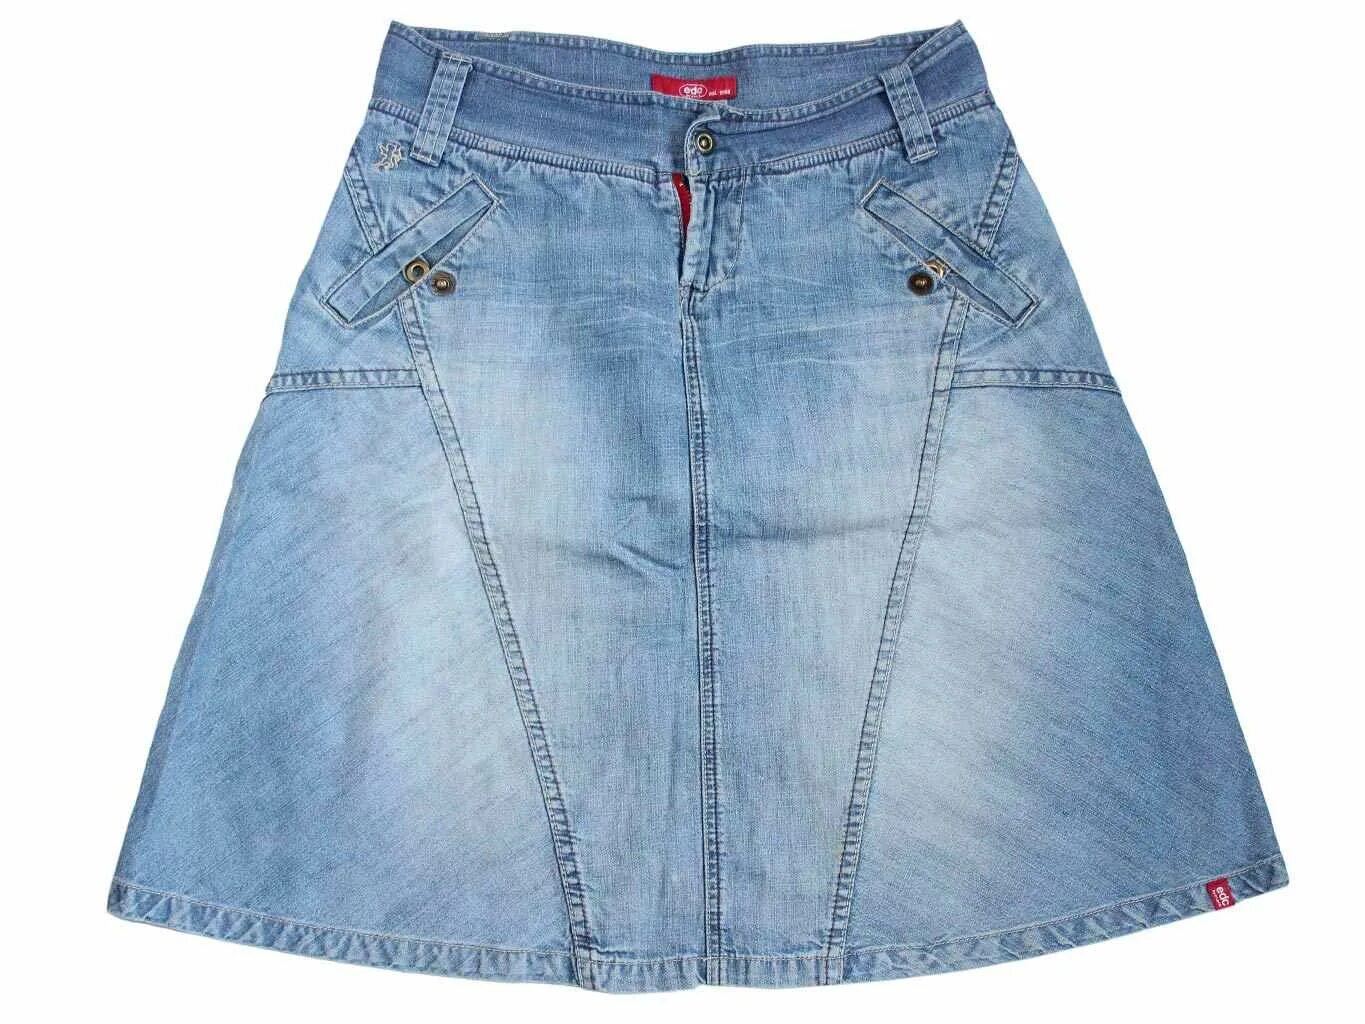 Купить джинсовую юбку в интернет. Esprit юбка джинсовая. Джинсовая юбка трапеция. Трапециевидная юбка джинсовая. Юбка джинсовая женская трапеция.